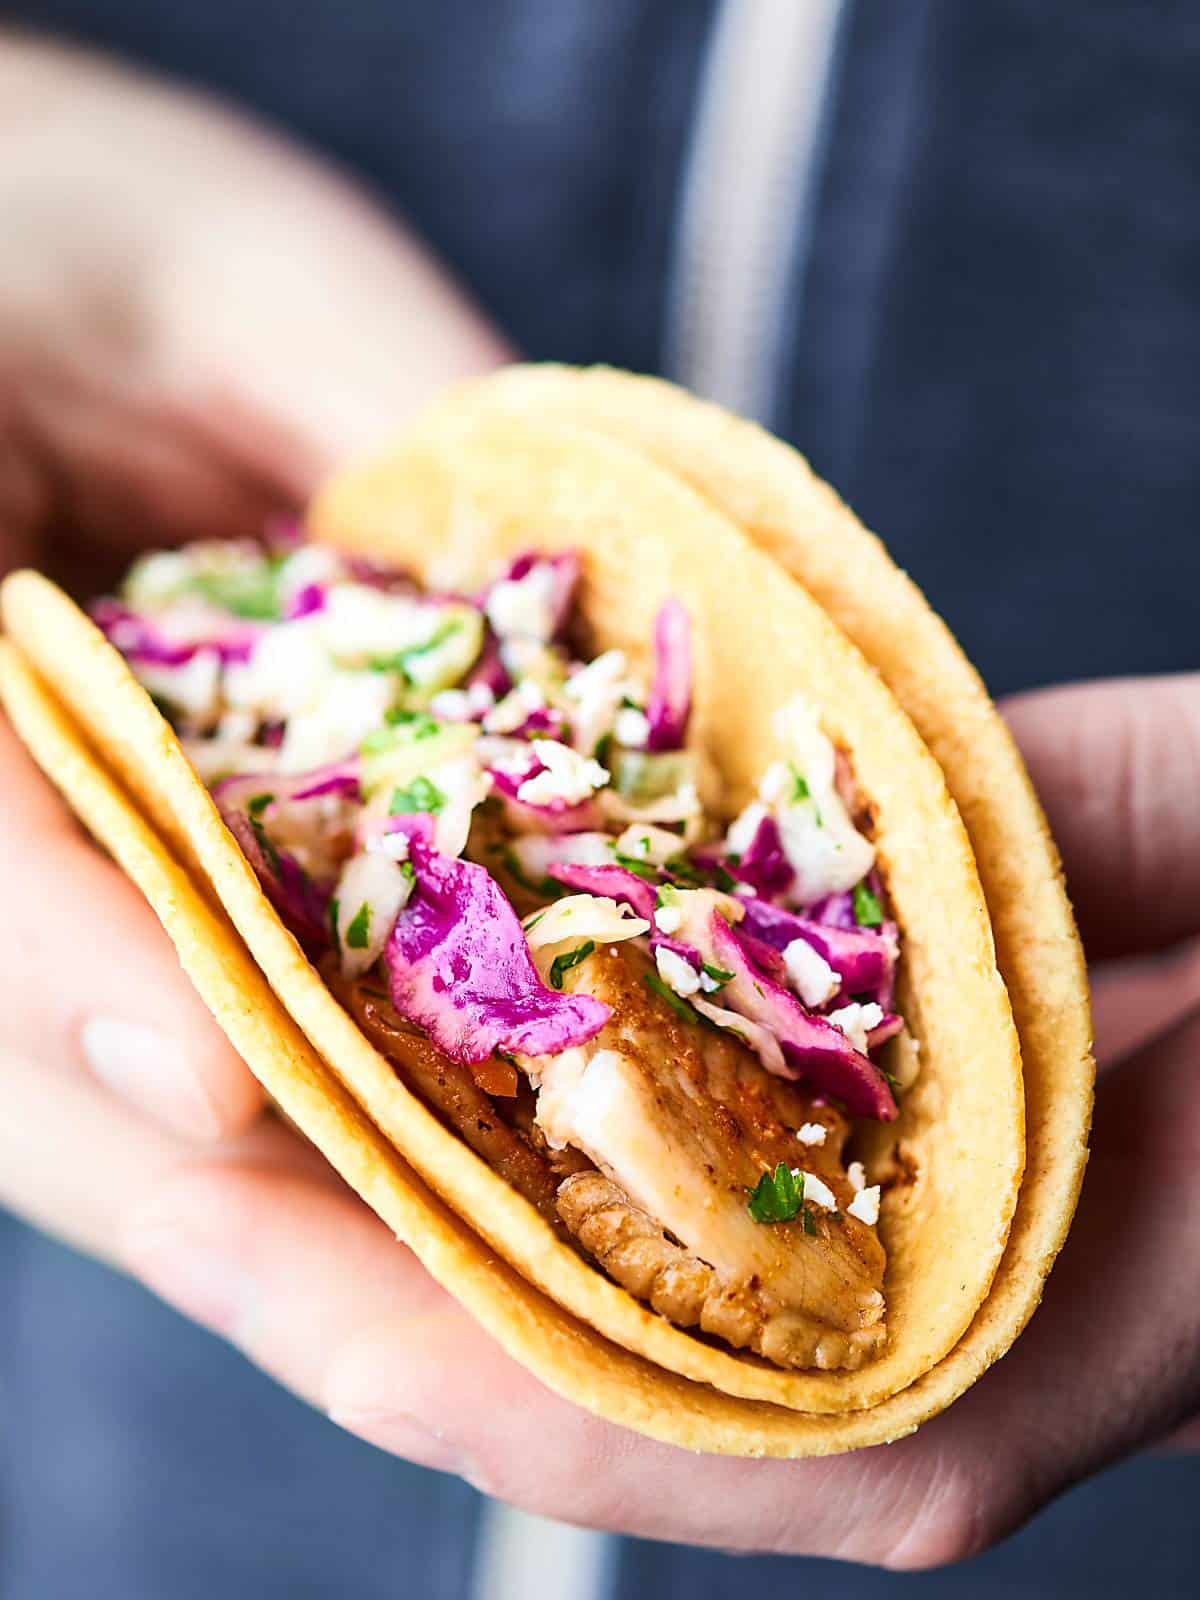 Baked Fish Tacos Recipe - Healthy, Gluten Free, 10 Min Prep